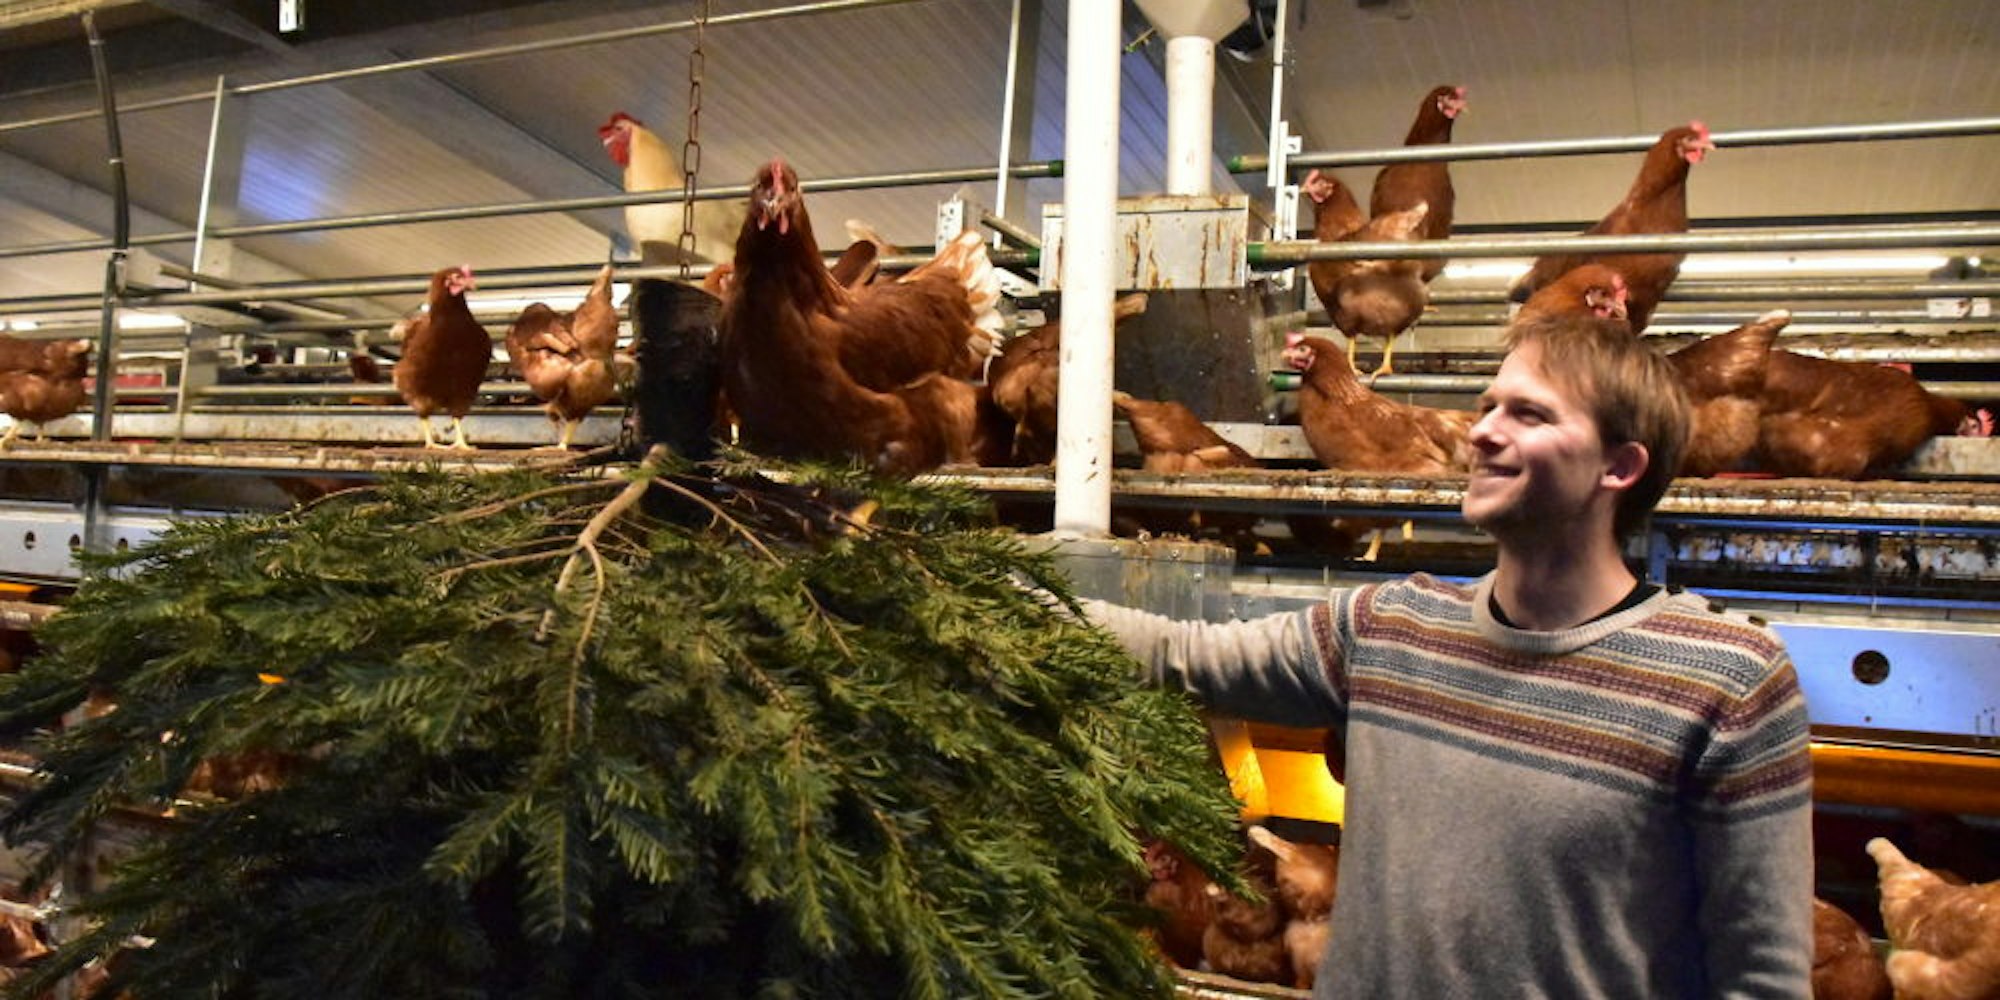 Glückliche Hühner, glücklicher Bauer. Lukas Tölkes sorgt im Stall seiner Tiere immer mal wieder für Abwechslung. „Die Hennen wollen beschäftigt sein“, erklärt er.